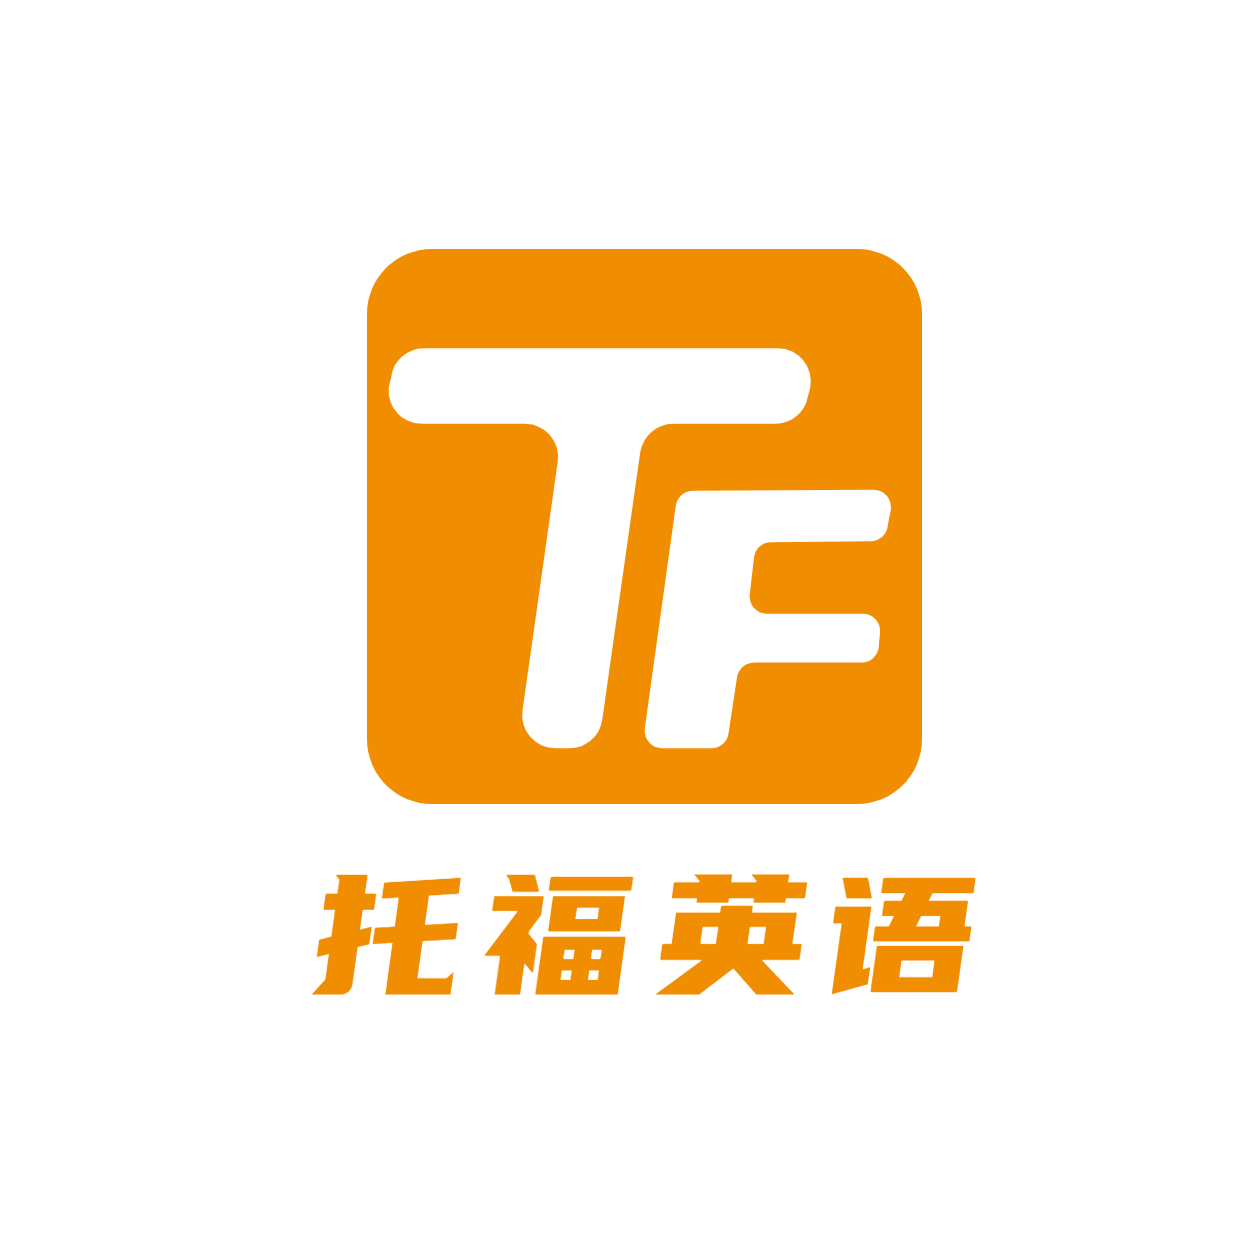 出国留学托福英语头像logo